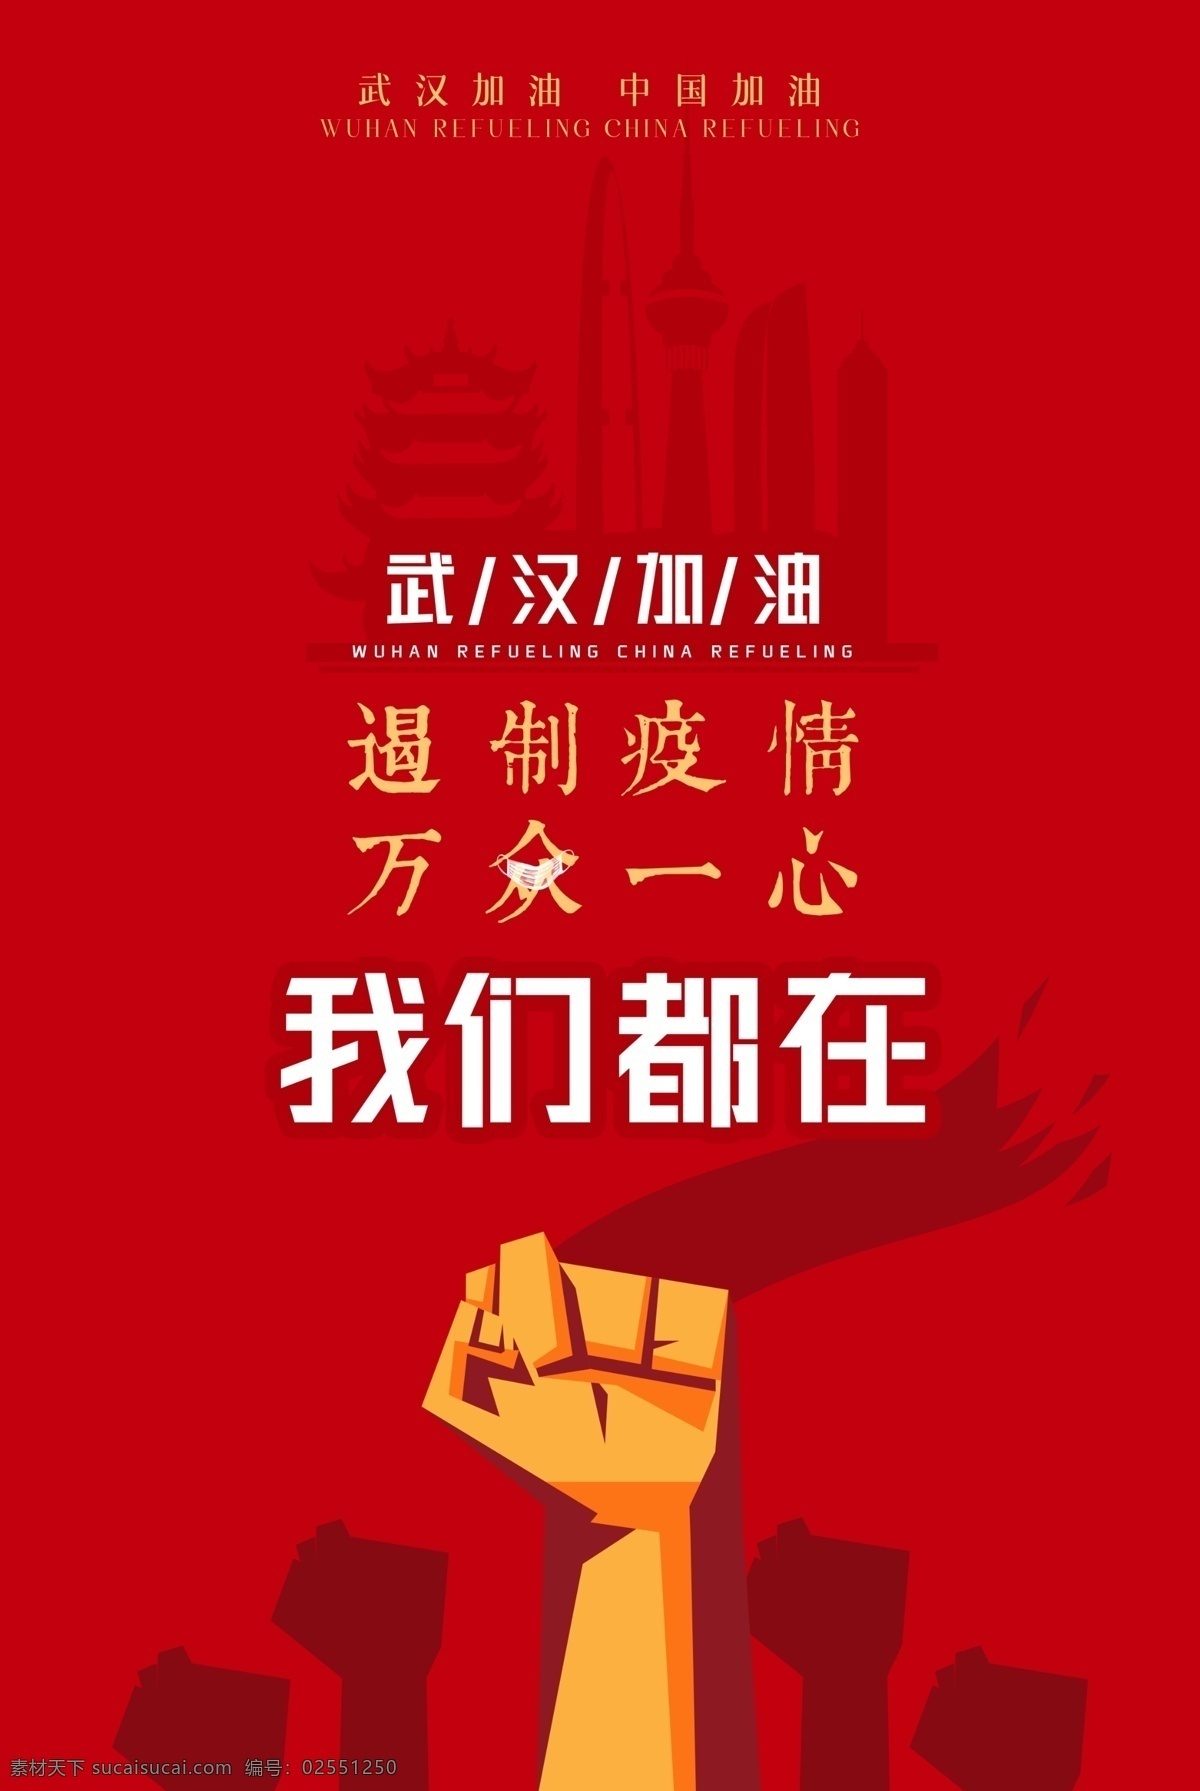 众志成城 加油 宣传海报 创意 抗击 新型冠状肺炎 武汉加油 中国加油 海报 大气 红色